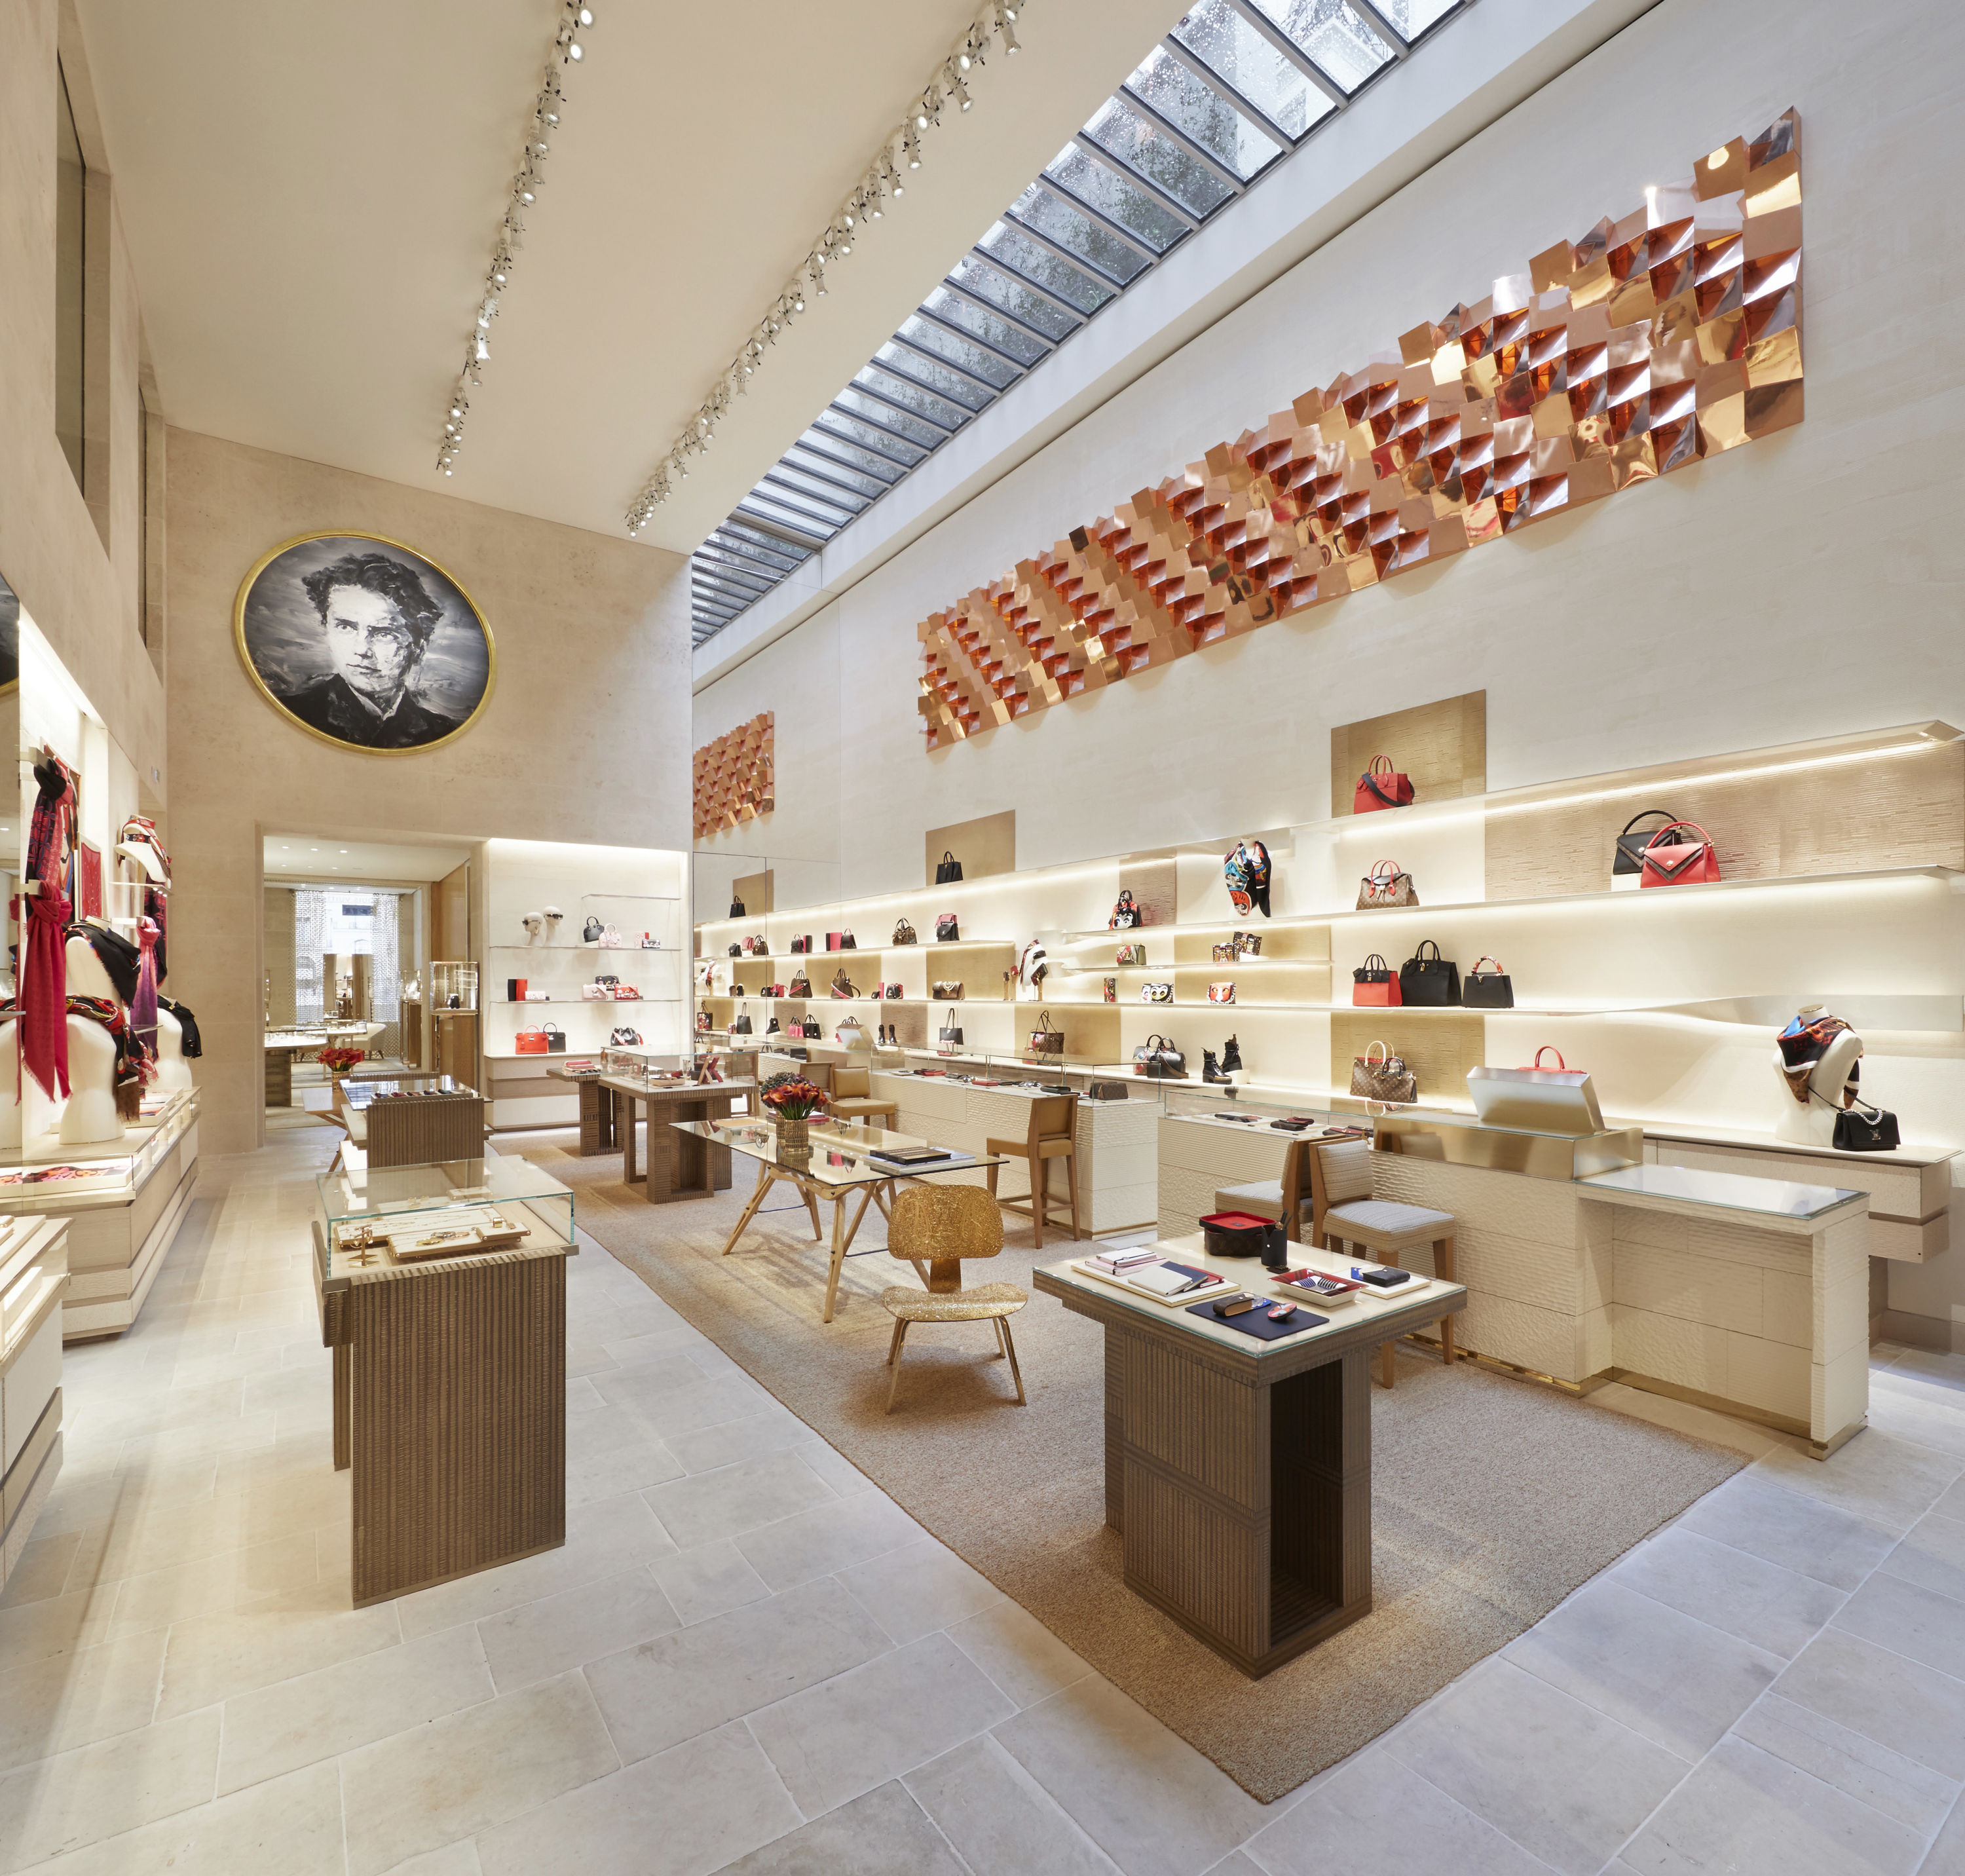 La Maison Vuitton pose ses bagages et fait briller la rue Saint